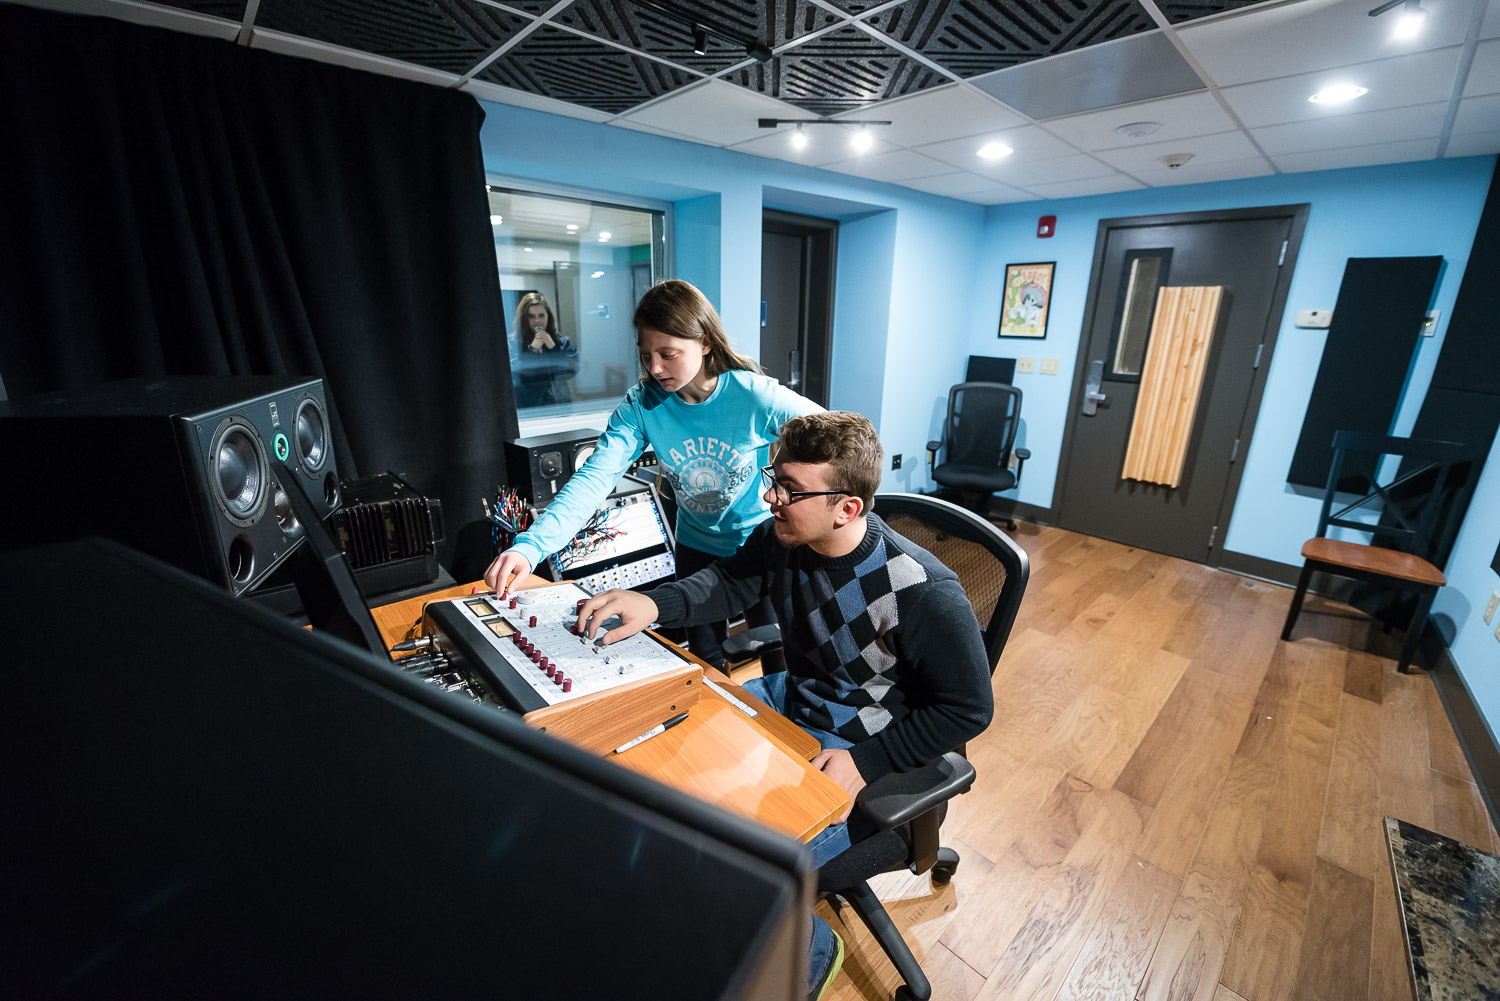 Two Marietta College students in the new recording studio